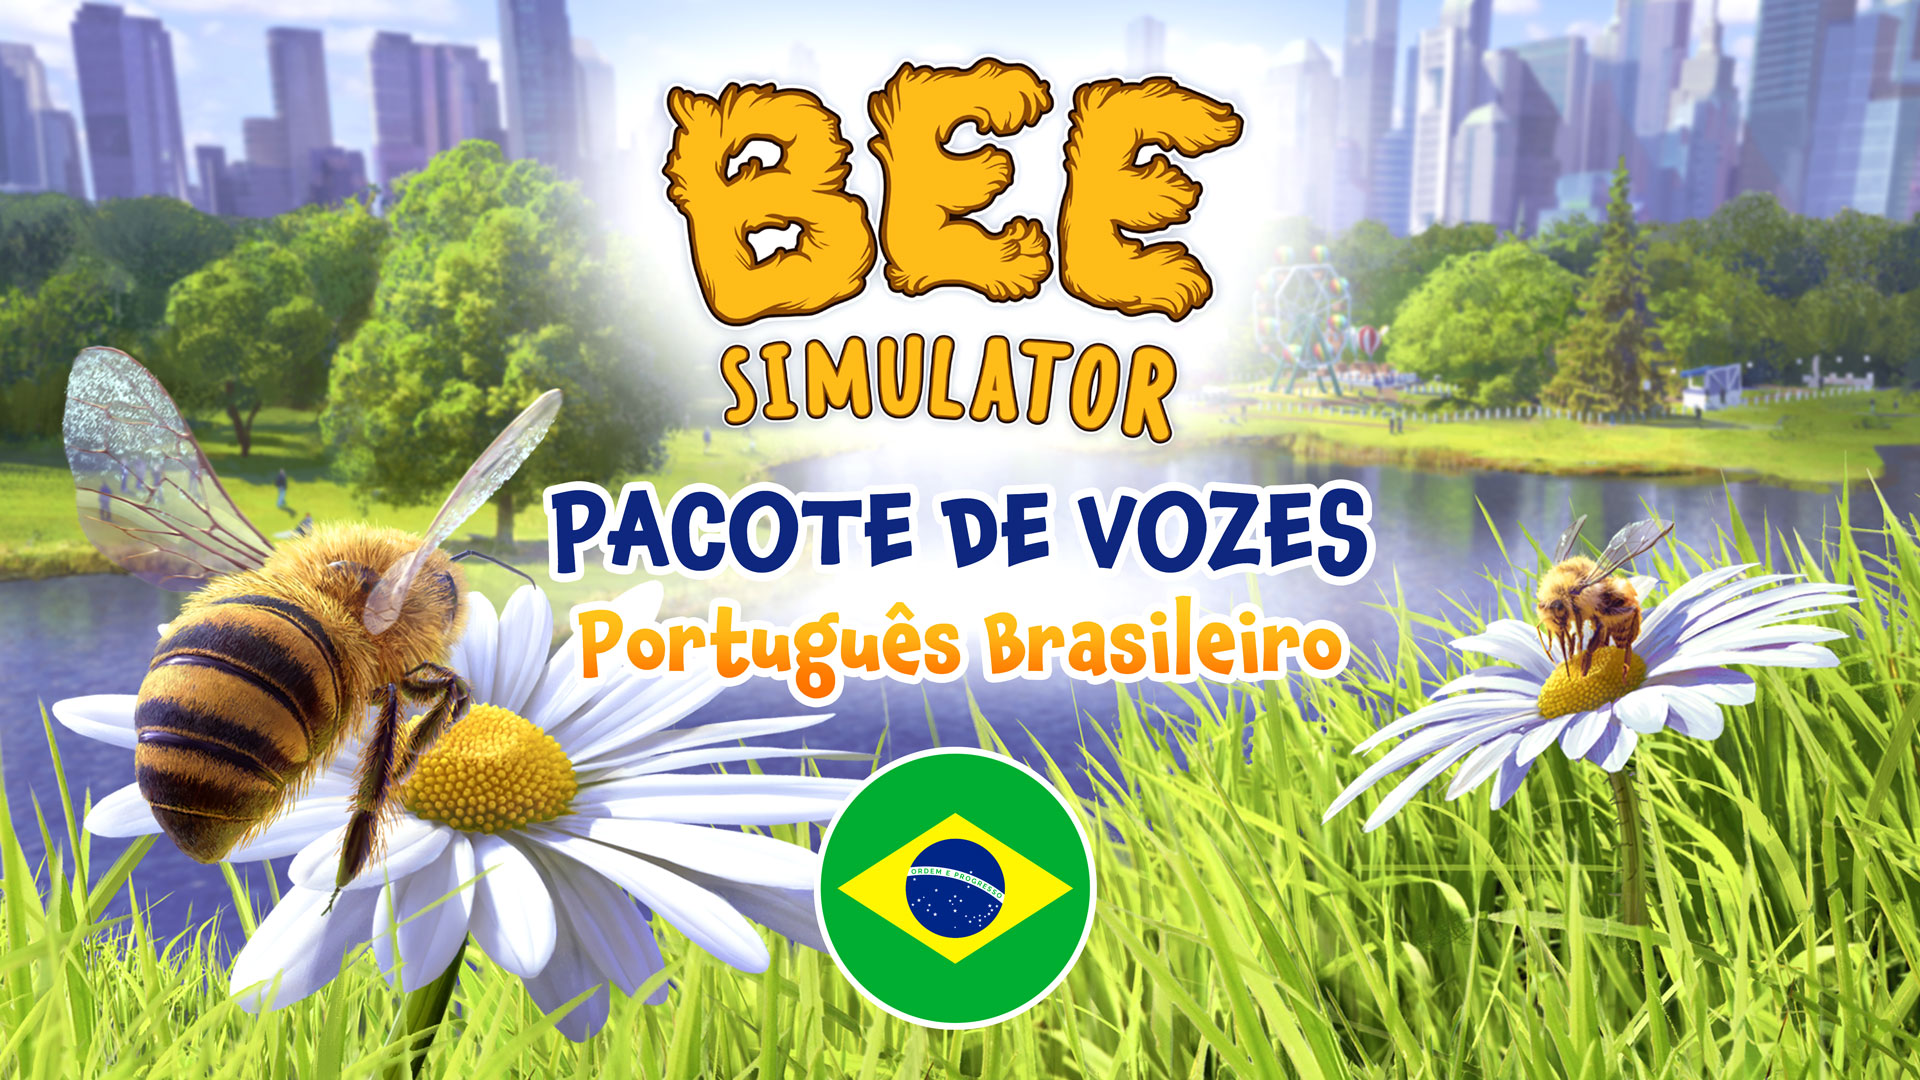 Bee Simulator Pacote de Vozes - Português Brasileiro